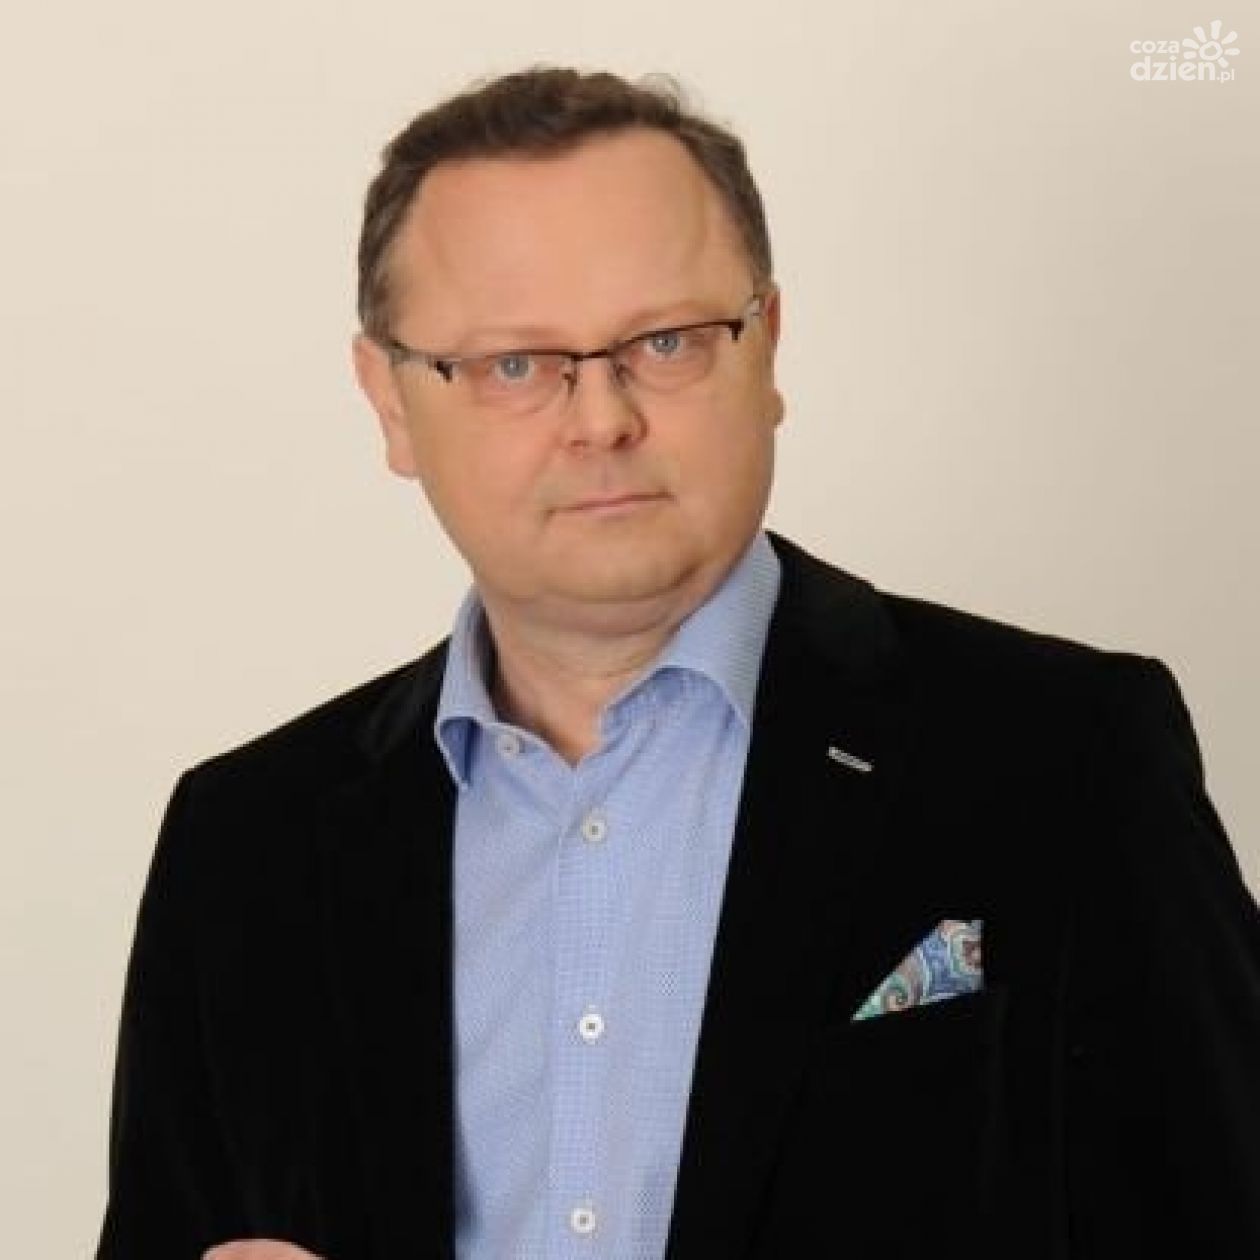 A. Szejna: Rządy  PiS kompromitują Polskę na arenie międzynarodowej